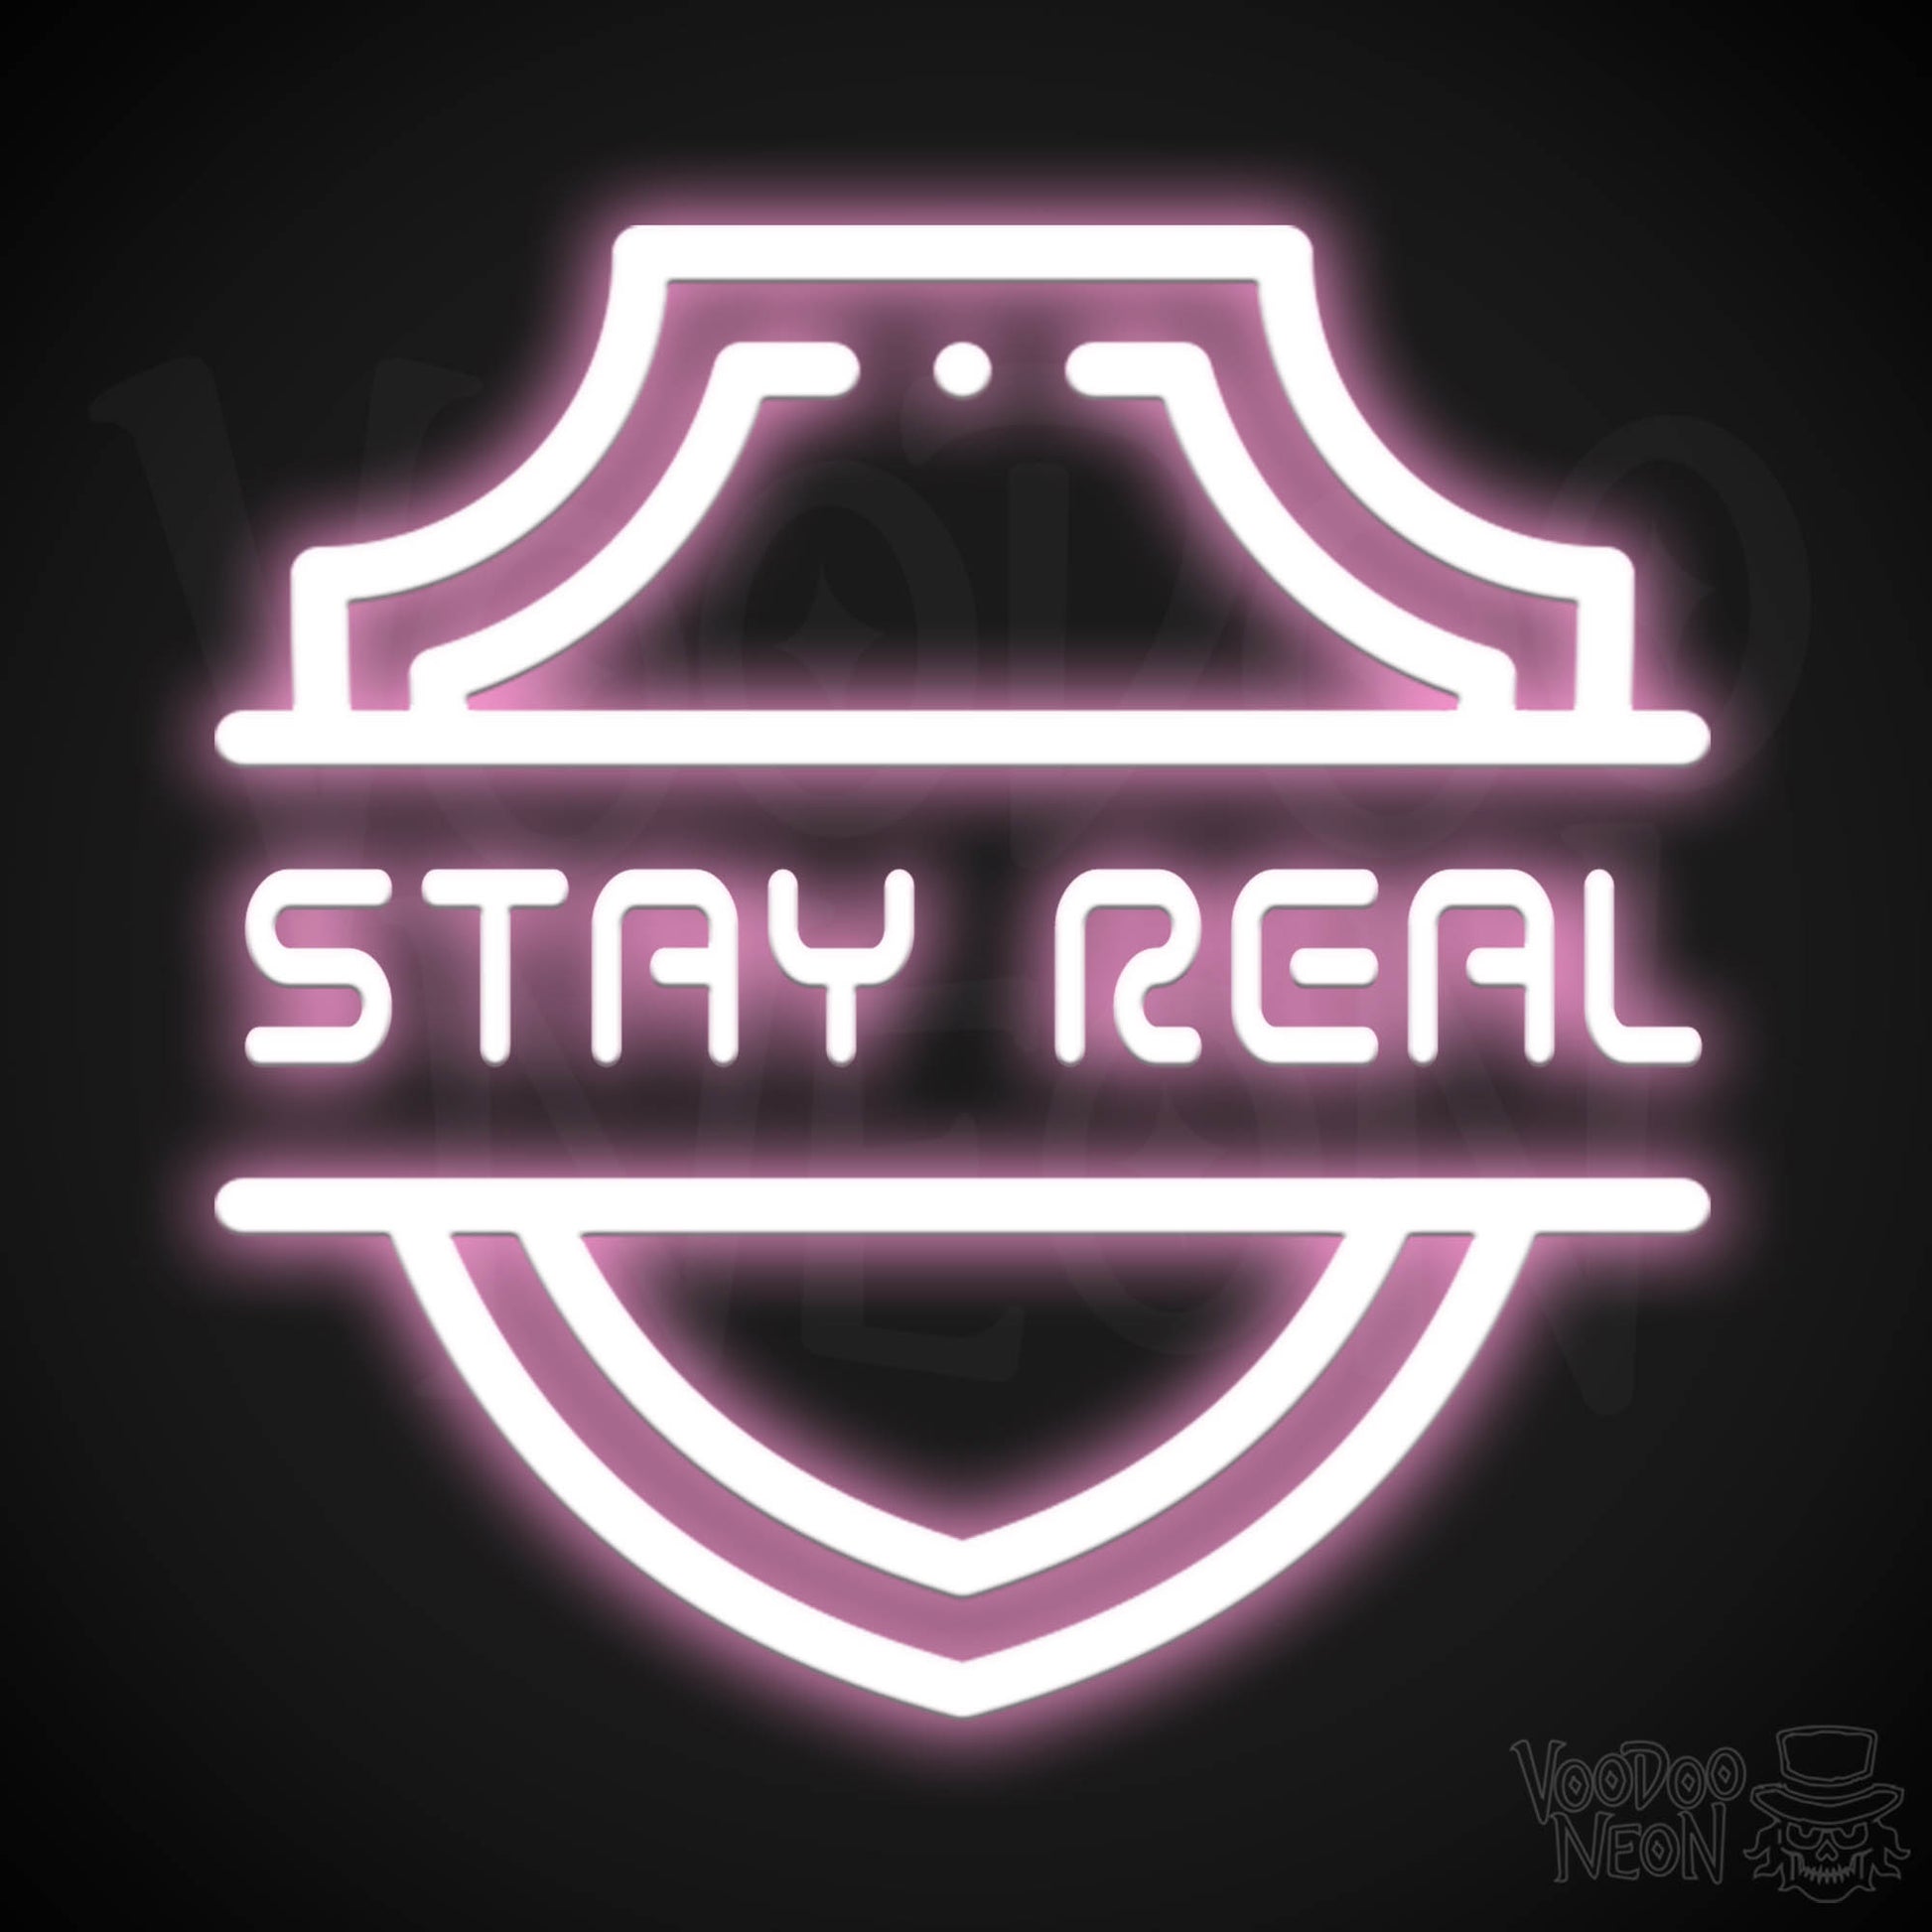 Stay Real Neon Sign - Neon Stay Real Sign - Neon Wall Art - Color Light Pink